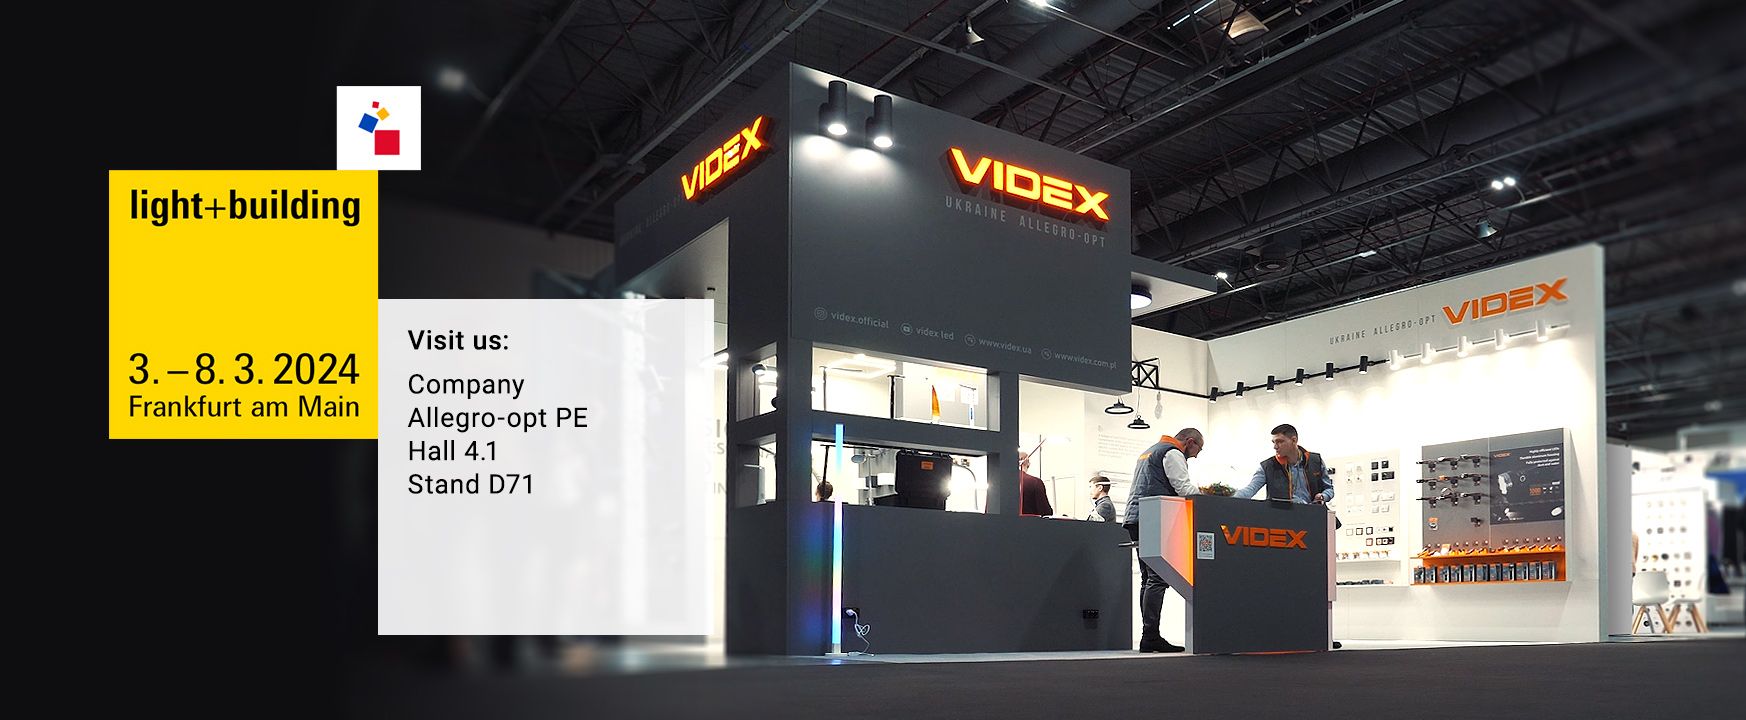 VIDEX Light + Building 2024